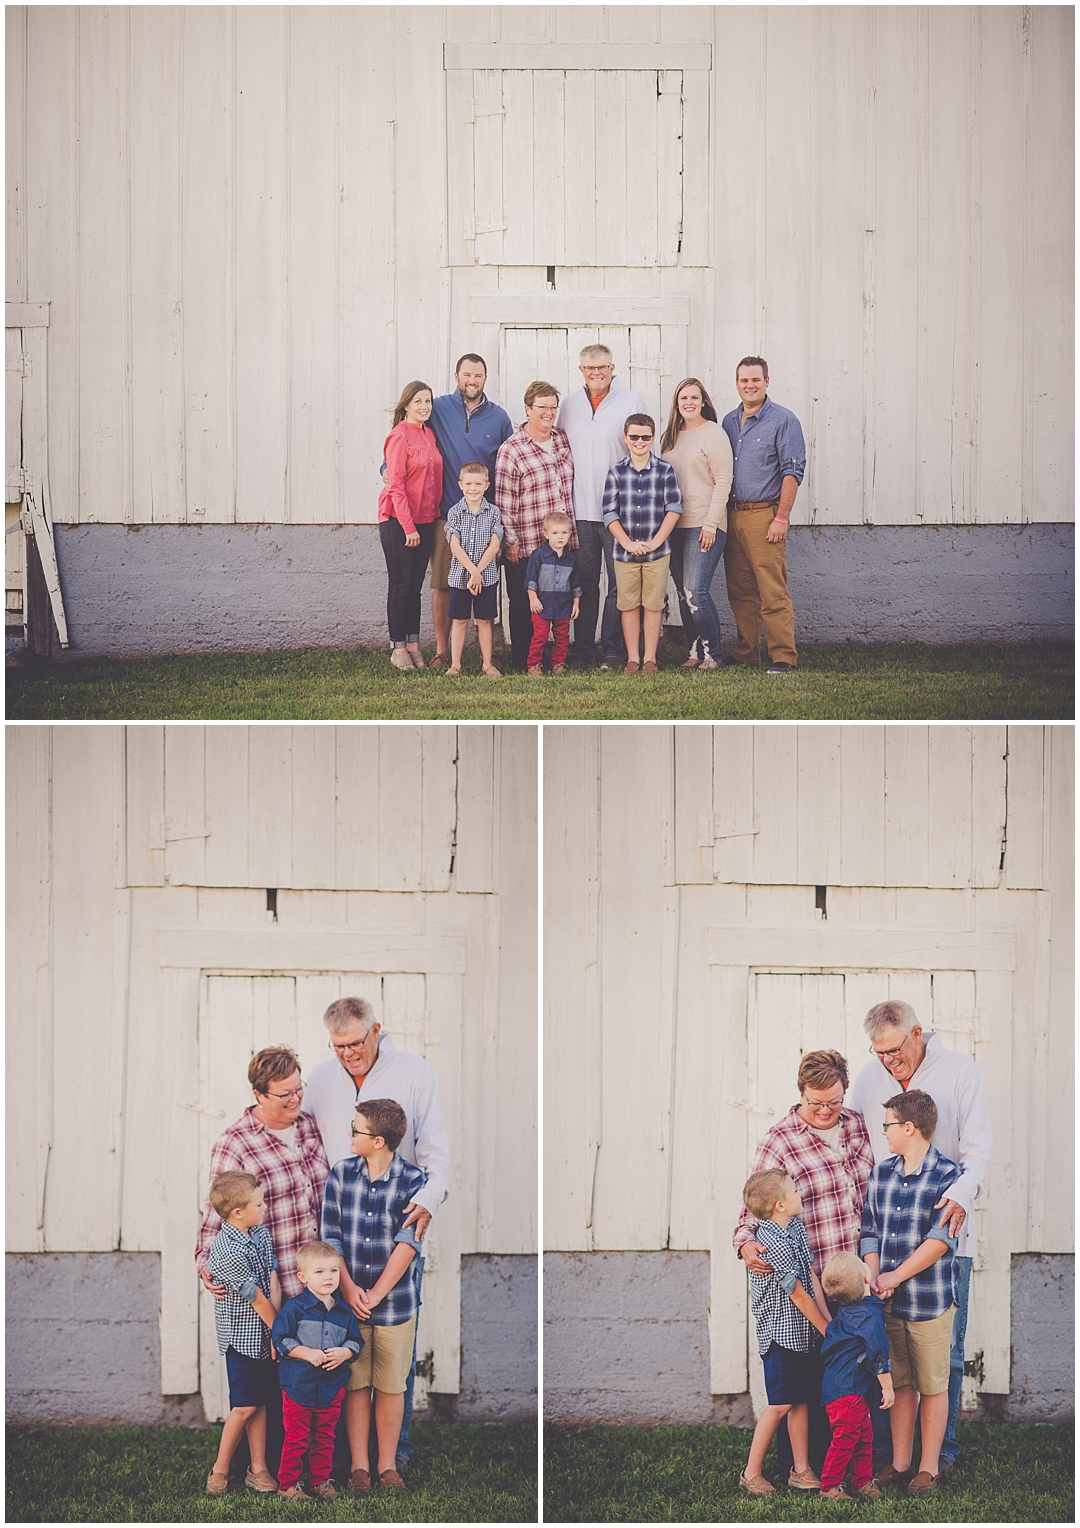 Kara Evans Photographer - Central Illinois Family Photographer - Milford Illinois Family Photos - Iroquois County Photographer - Summer Farm Family Photos